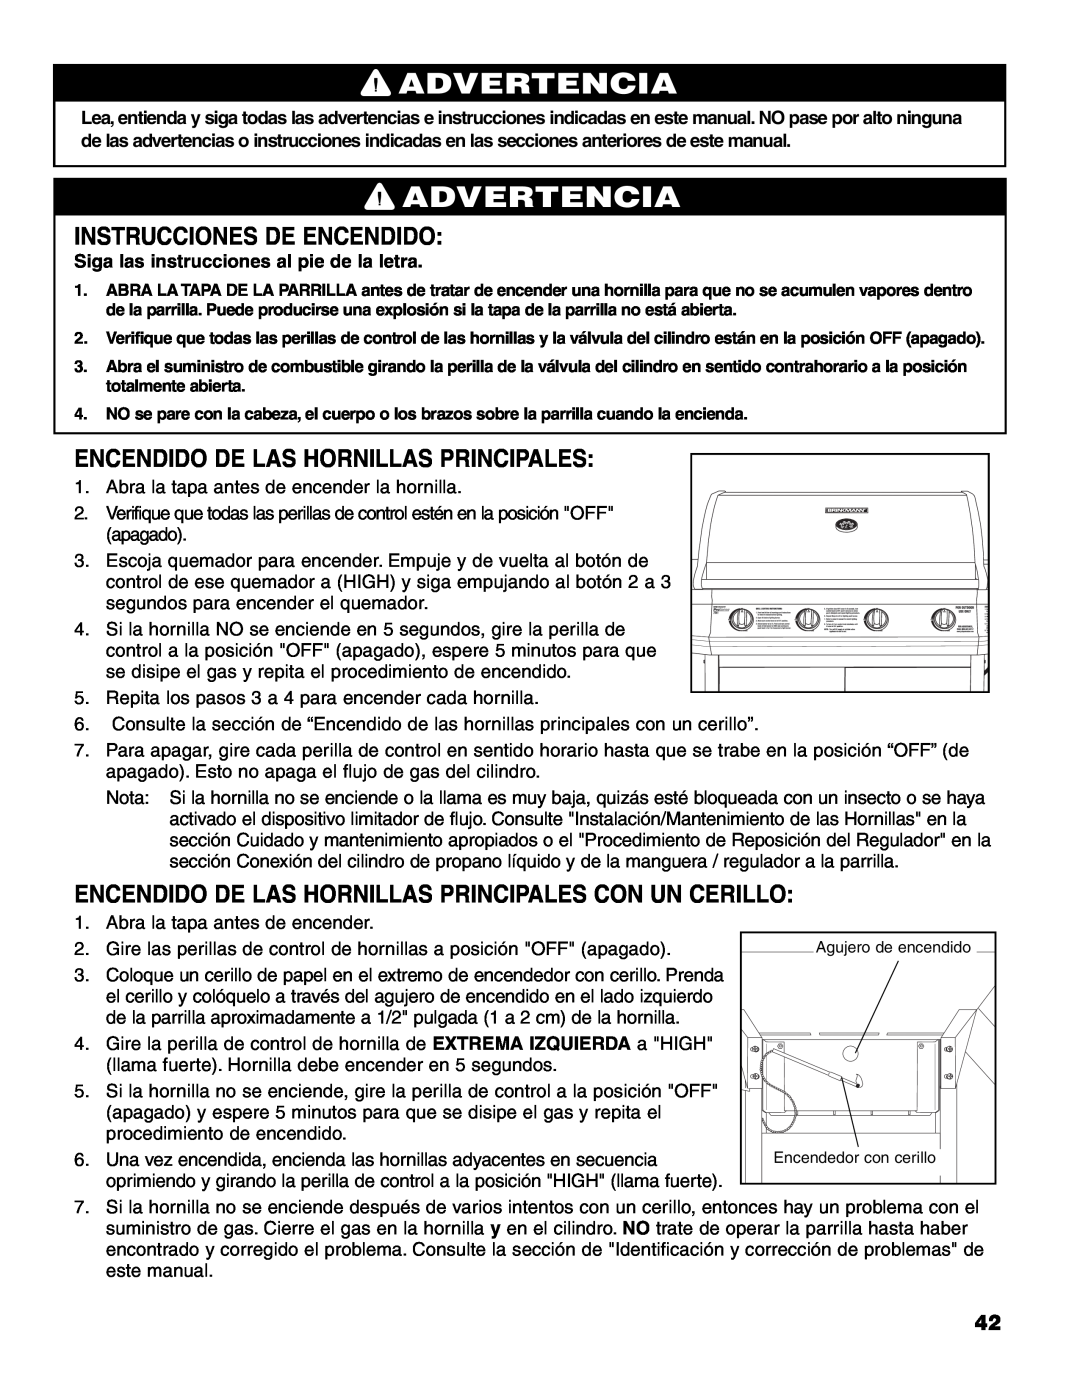 Brinkmann 7541 Series owner manual Instrucciones De Encendido, Encendido De Las Hornillas Principales, Advertencia 